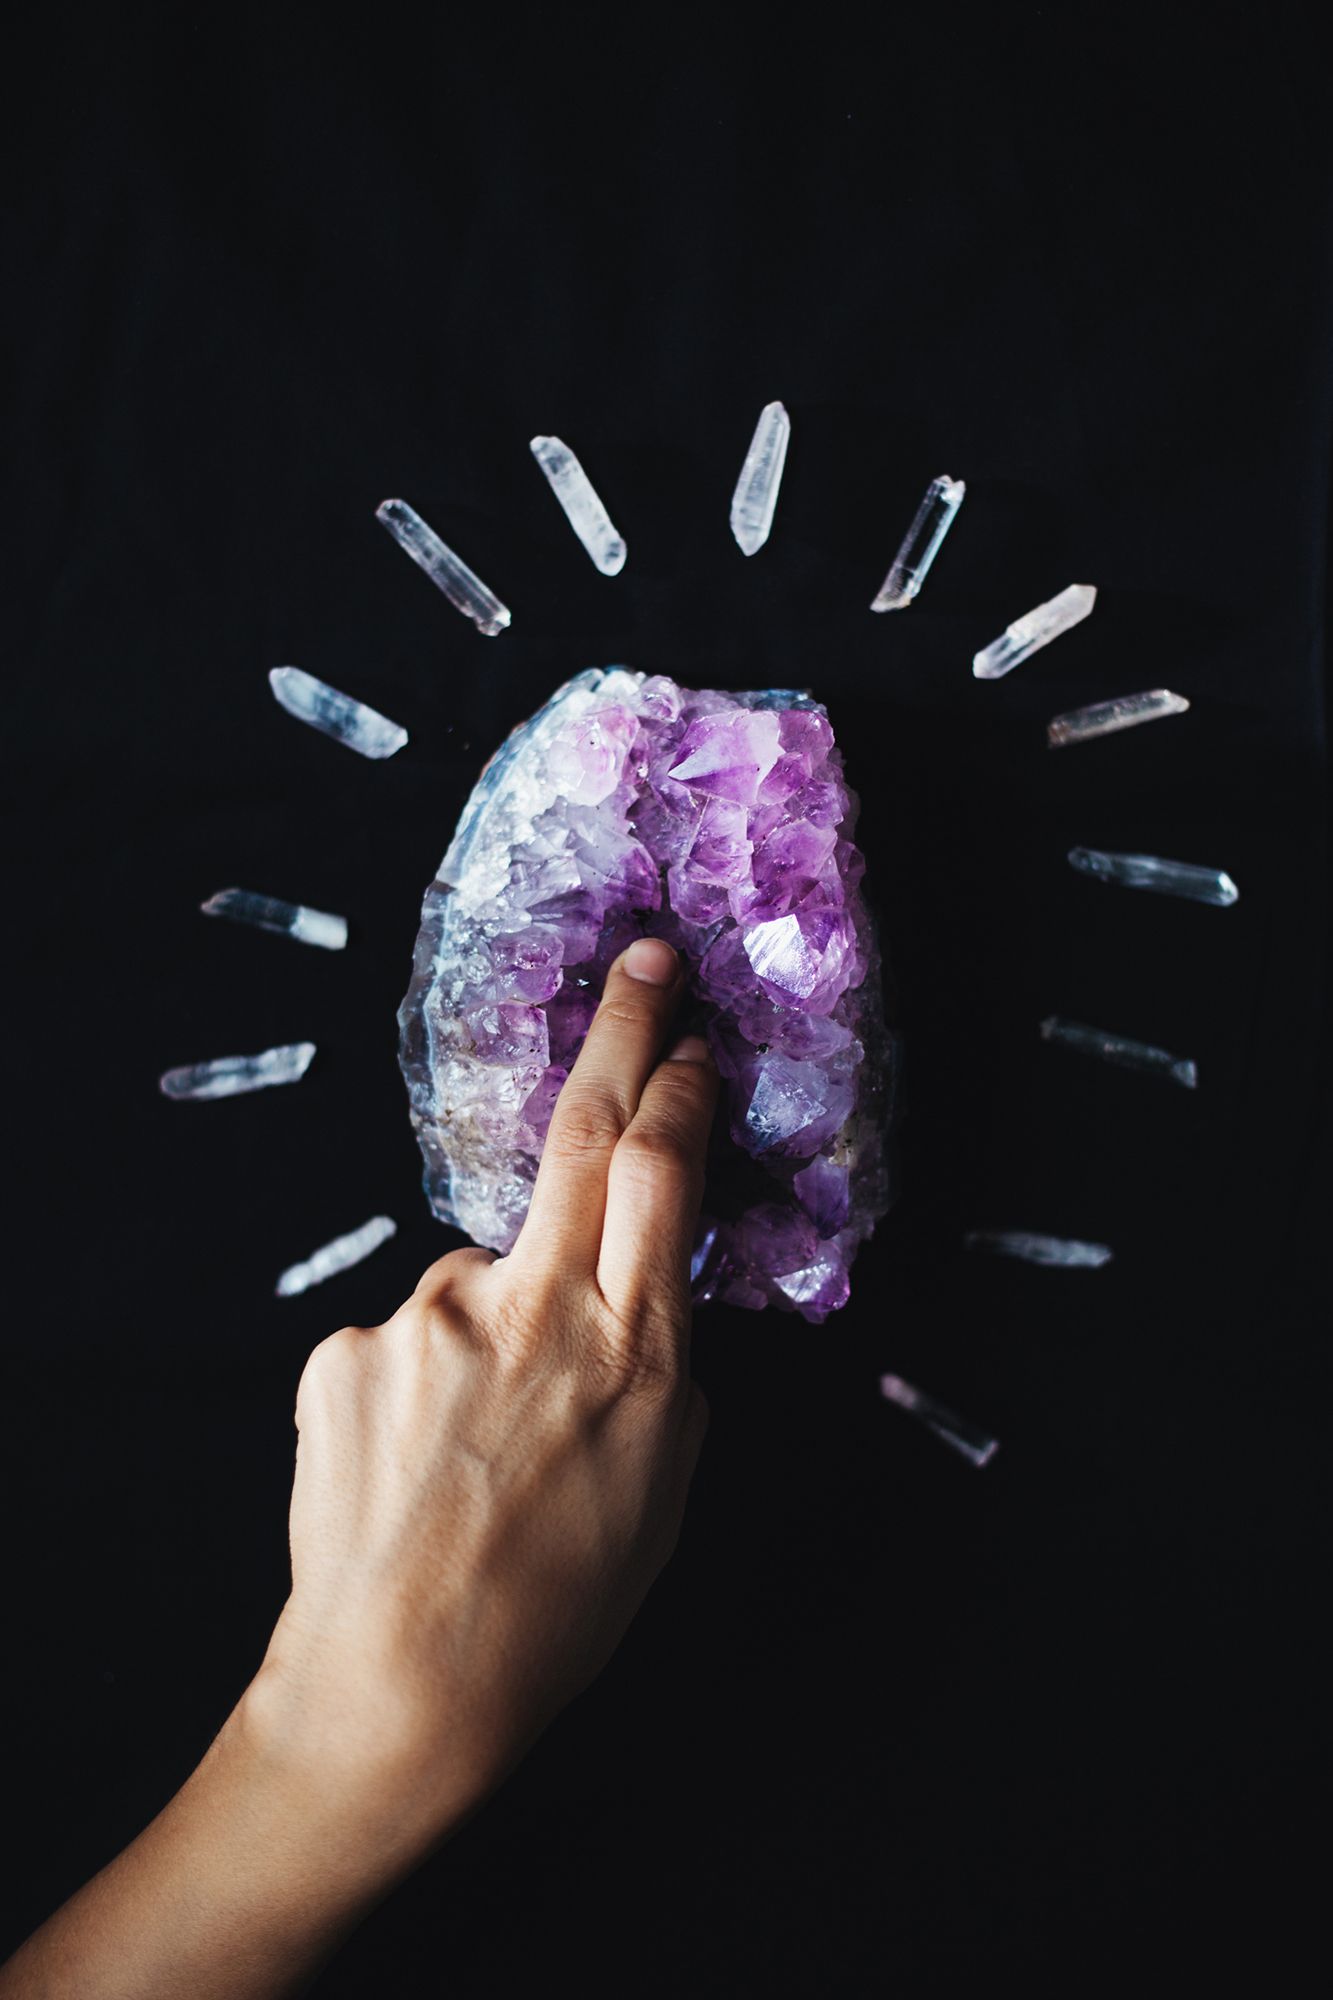 2 Finger werden in einen Kristall eingeführt, der wie eine Vagina aussieht